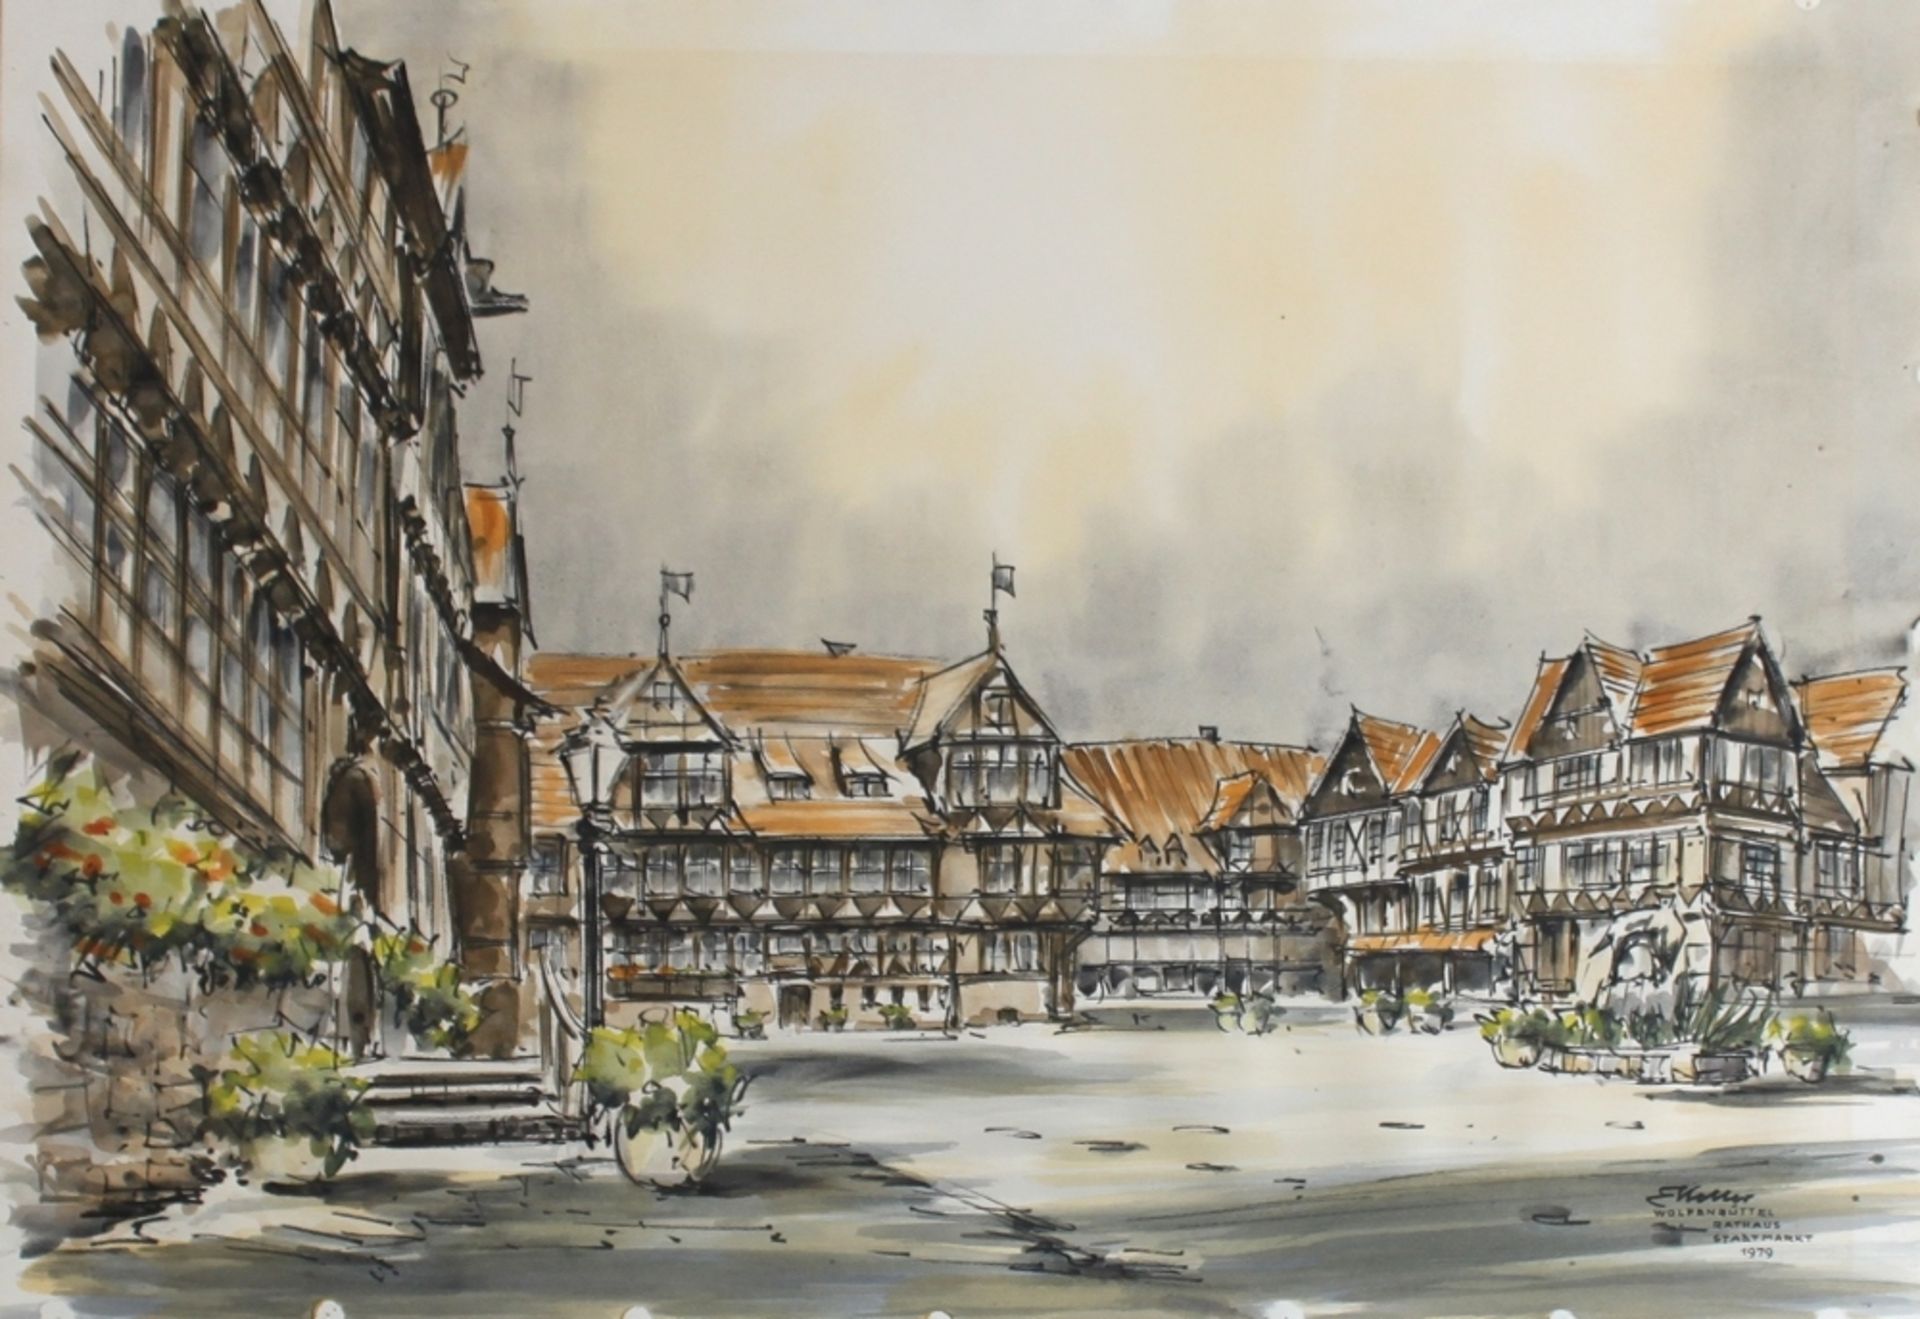 Wolfenbüttel. Keller, Erich. "Wolfenbüttel - Rathaus / Stadtmarkt". Farbig aquarellierte Zeichnung. 